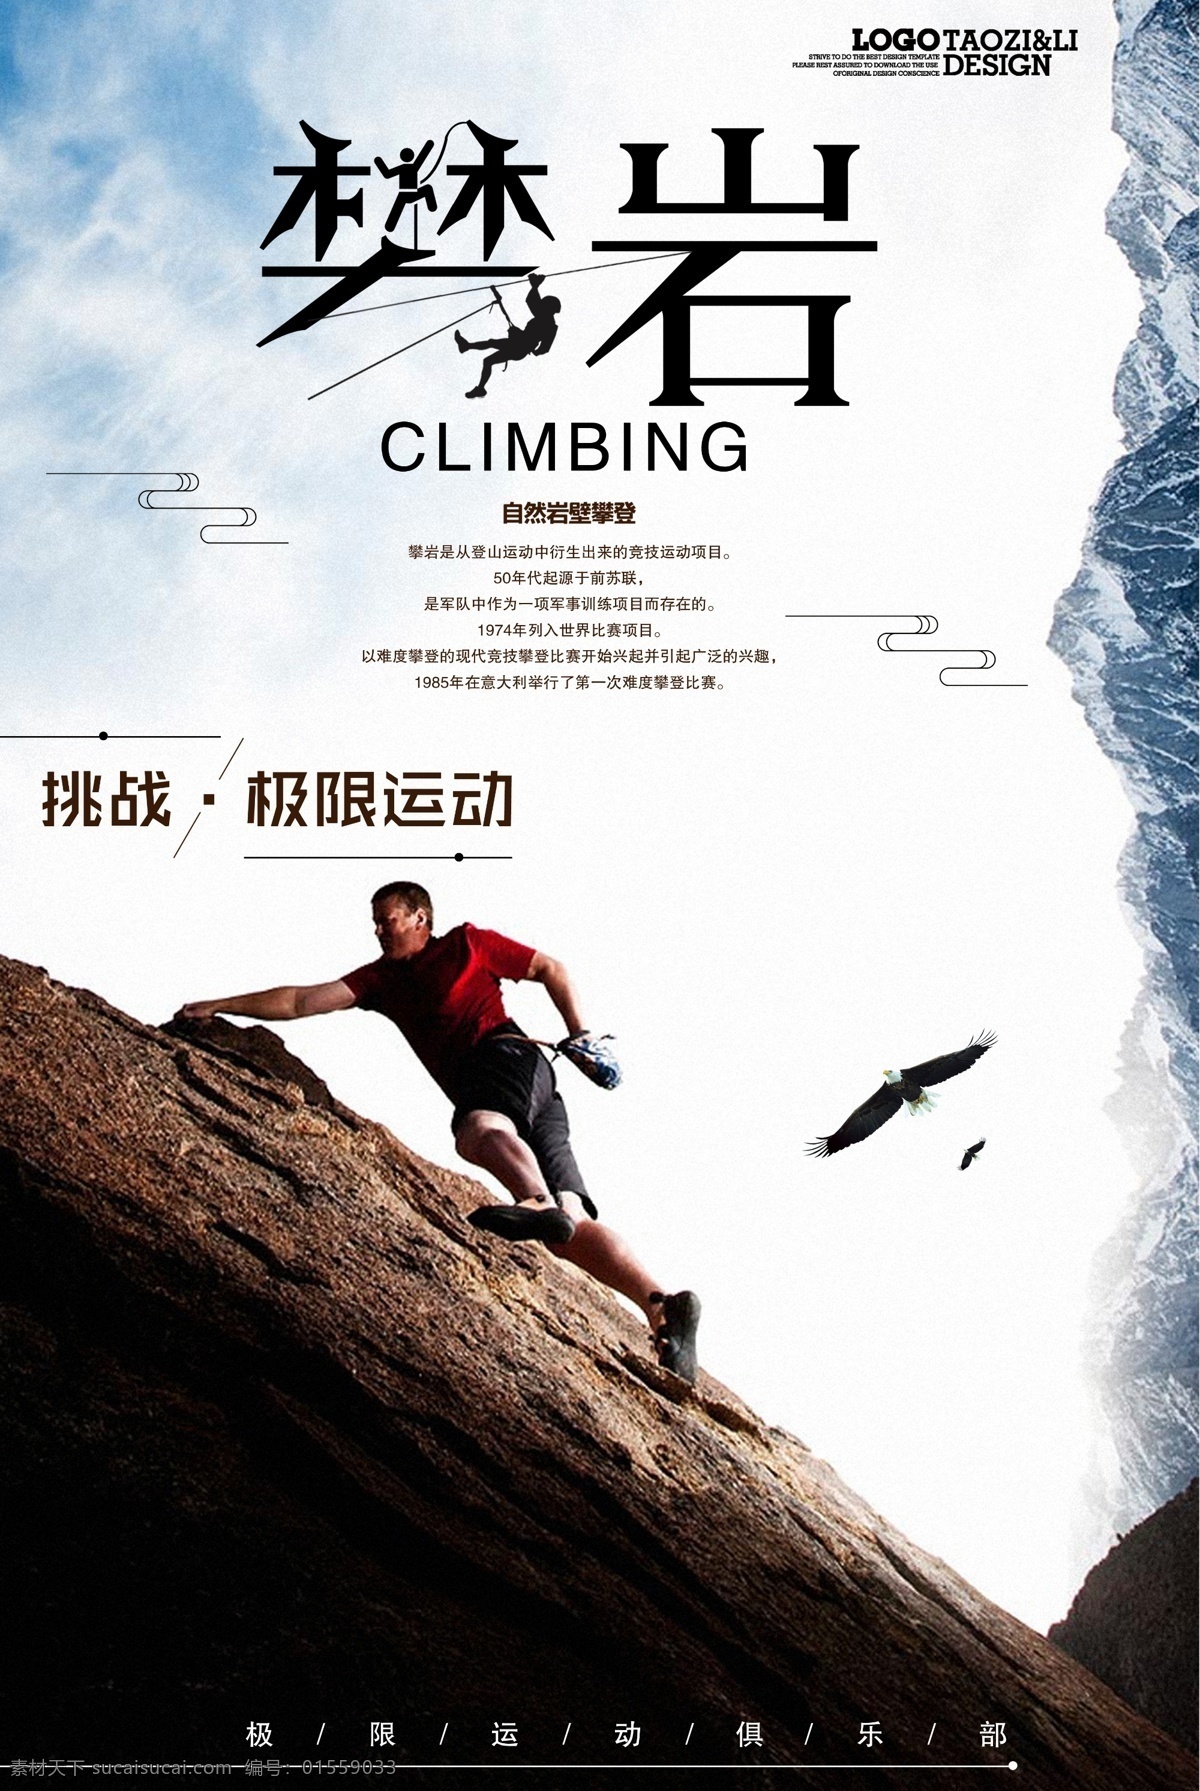 极限 攀岩 运动 广告 海报 励志 健身房 极限运动 攀登攀岩 灯箱海报 设计模板 创意 宣传 易拉宝 展架广告 传单海报 户外运动广告 攀岩运动